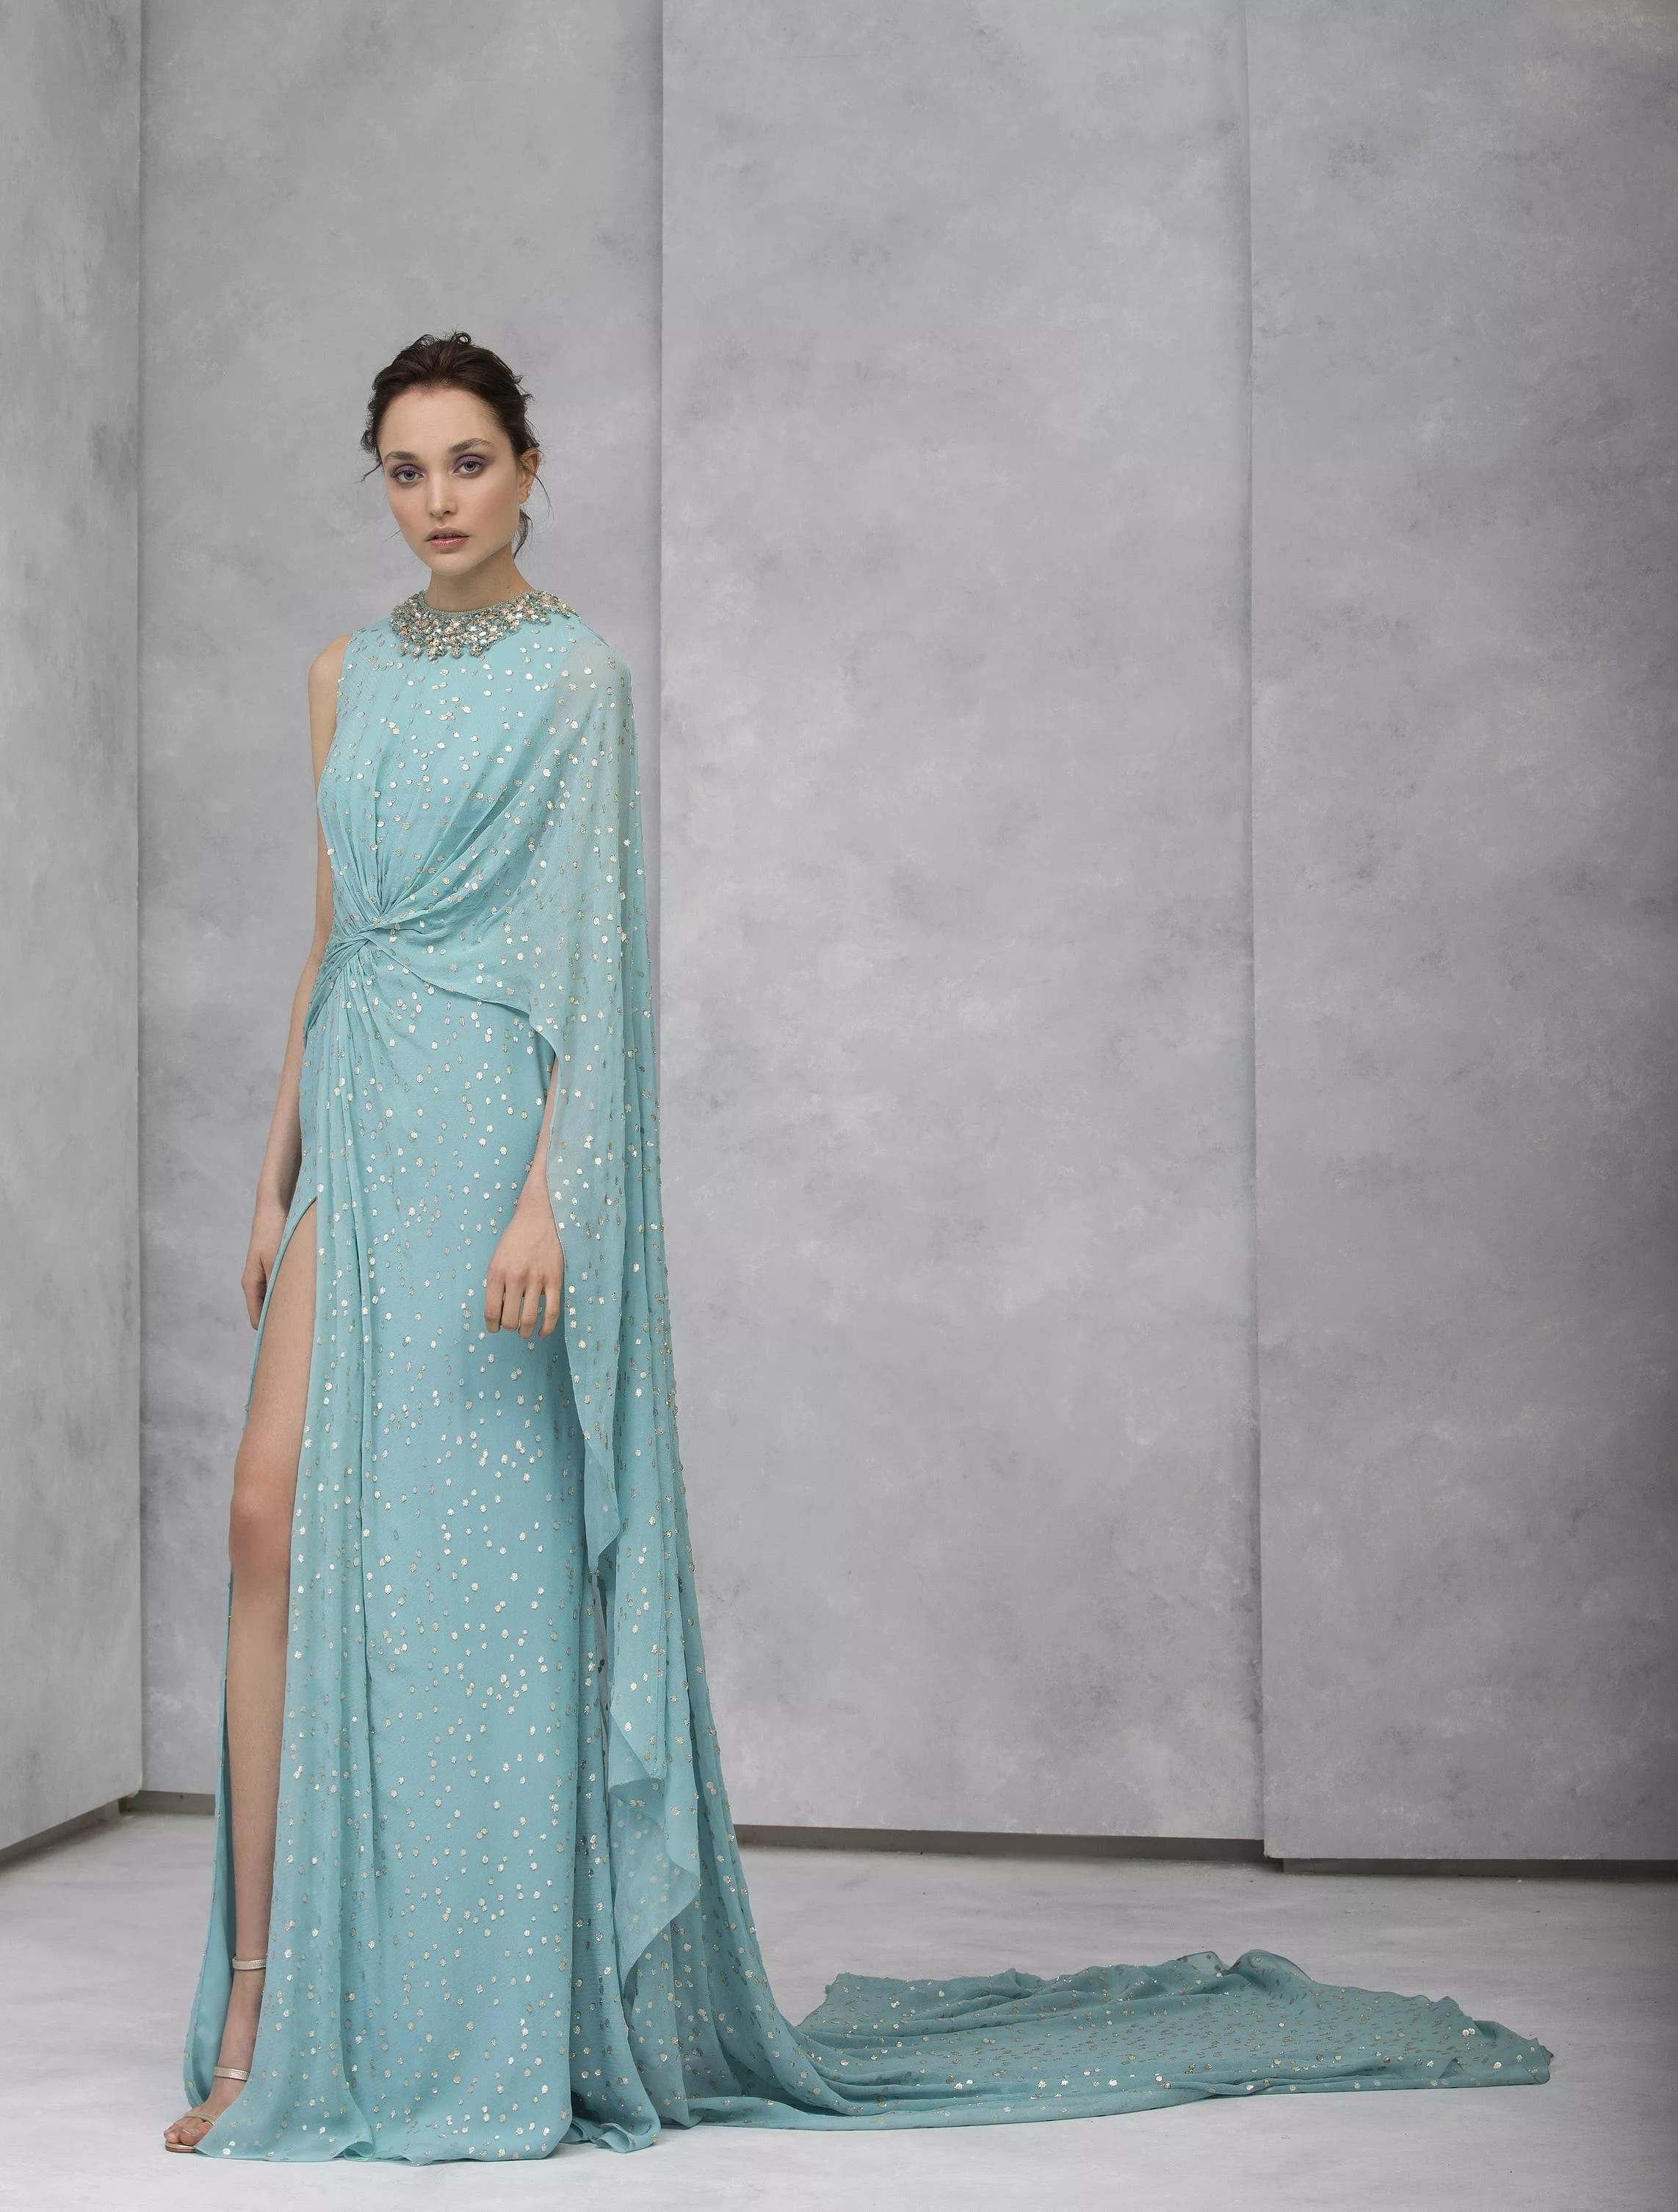 مجموعات المصممين العرب للأزياء الجاهزة لخريف 2020 ضمن أسبوع الموضة الباريسي